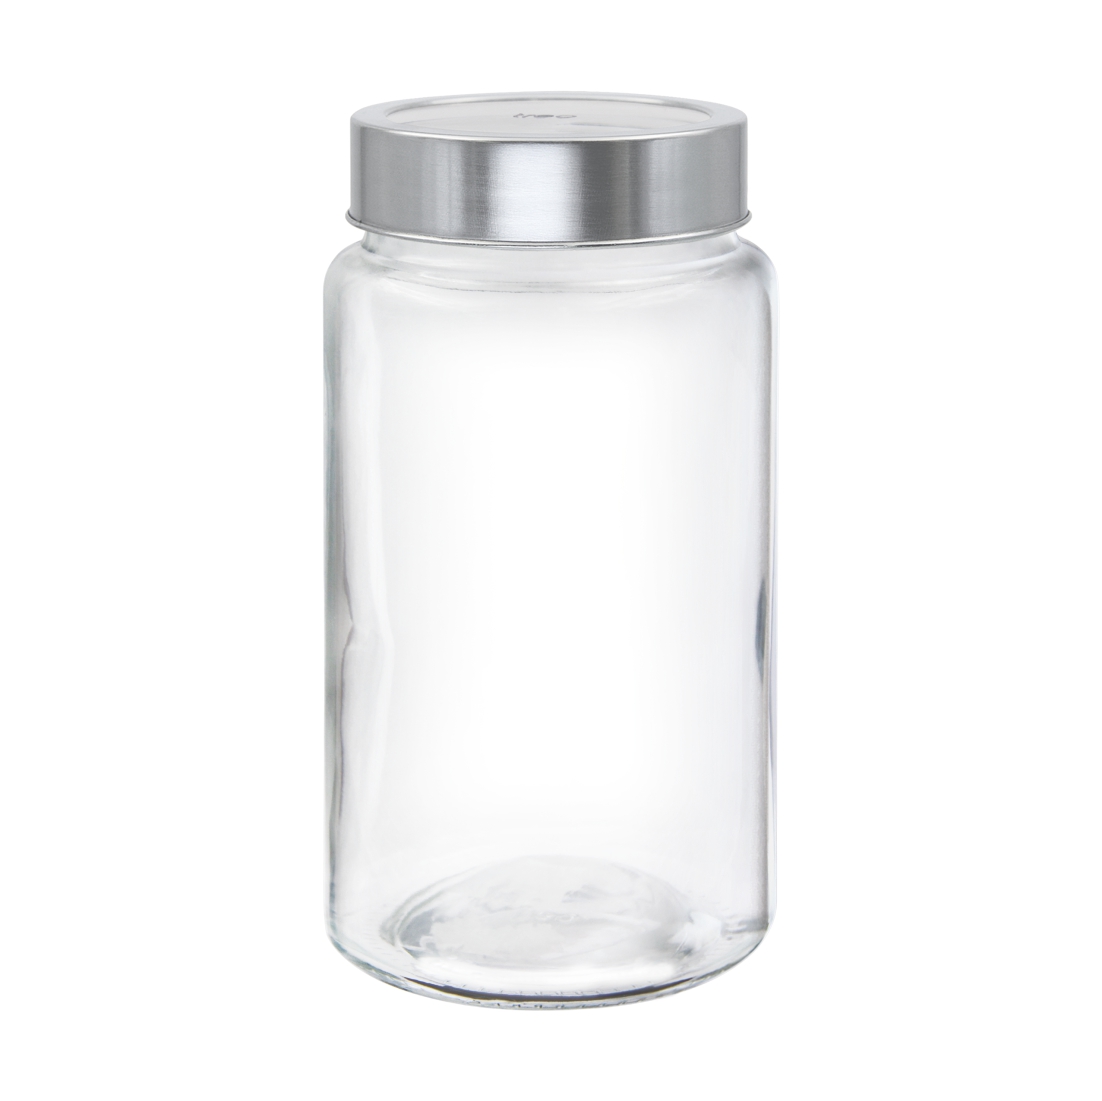 Treo Radius Glass Jar